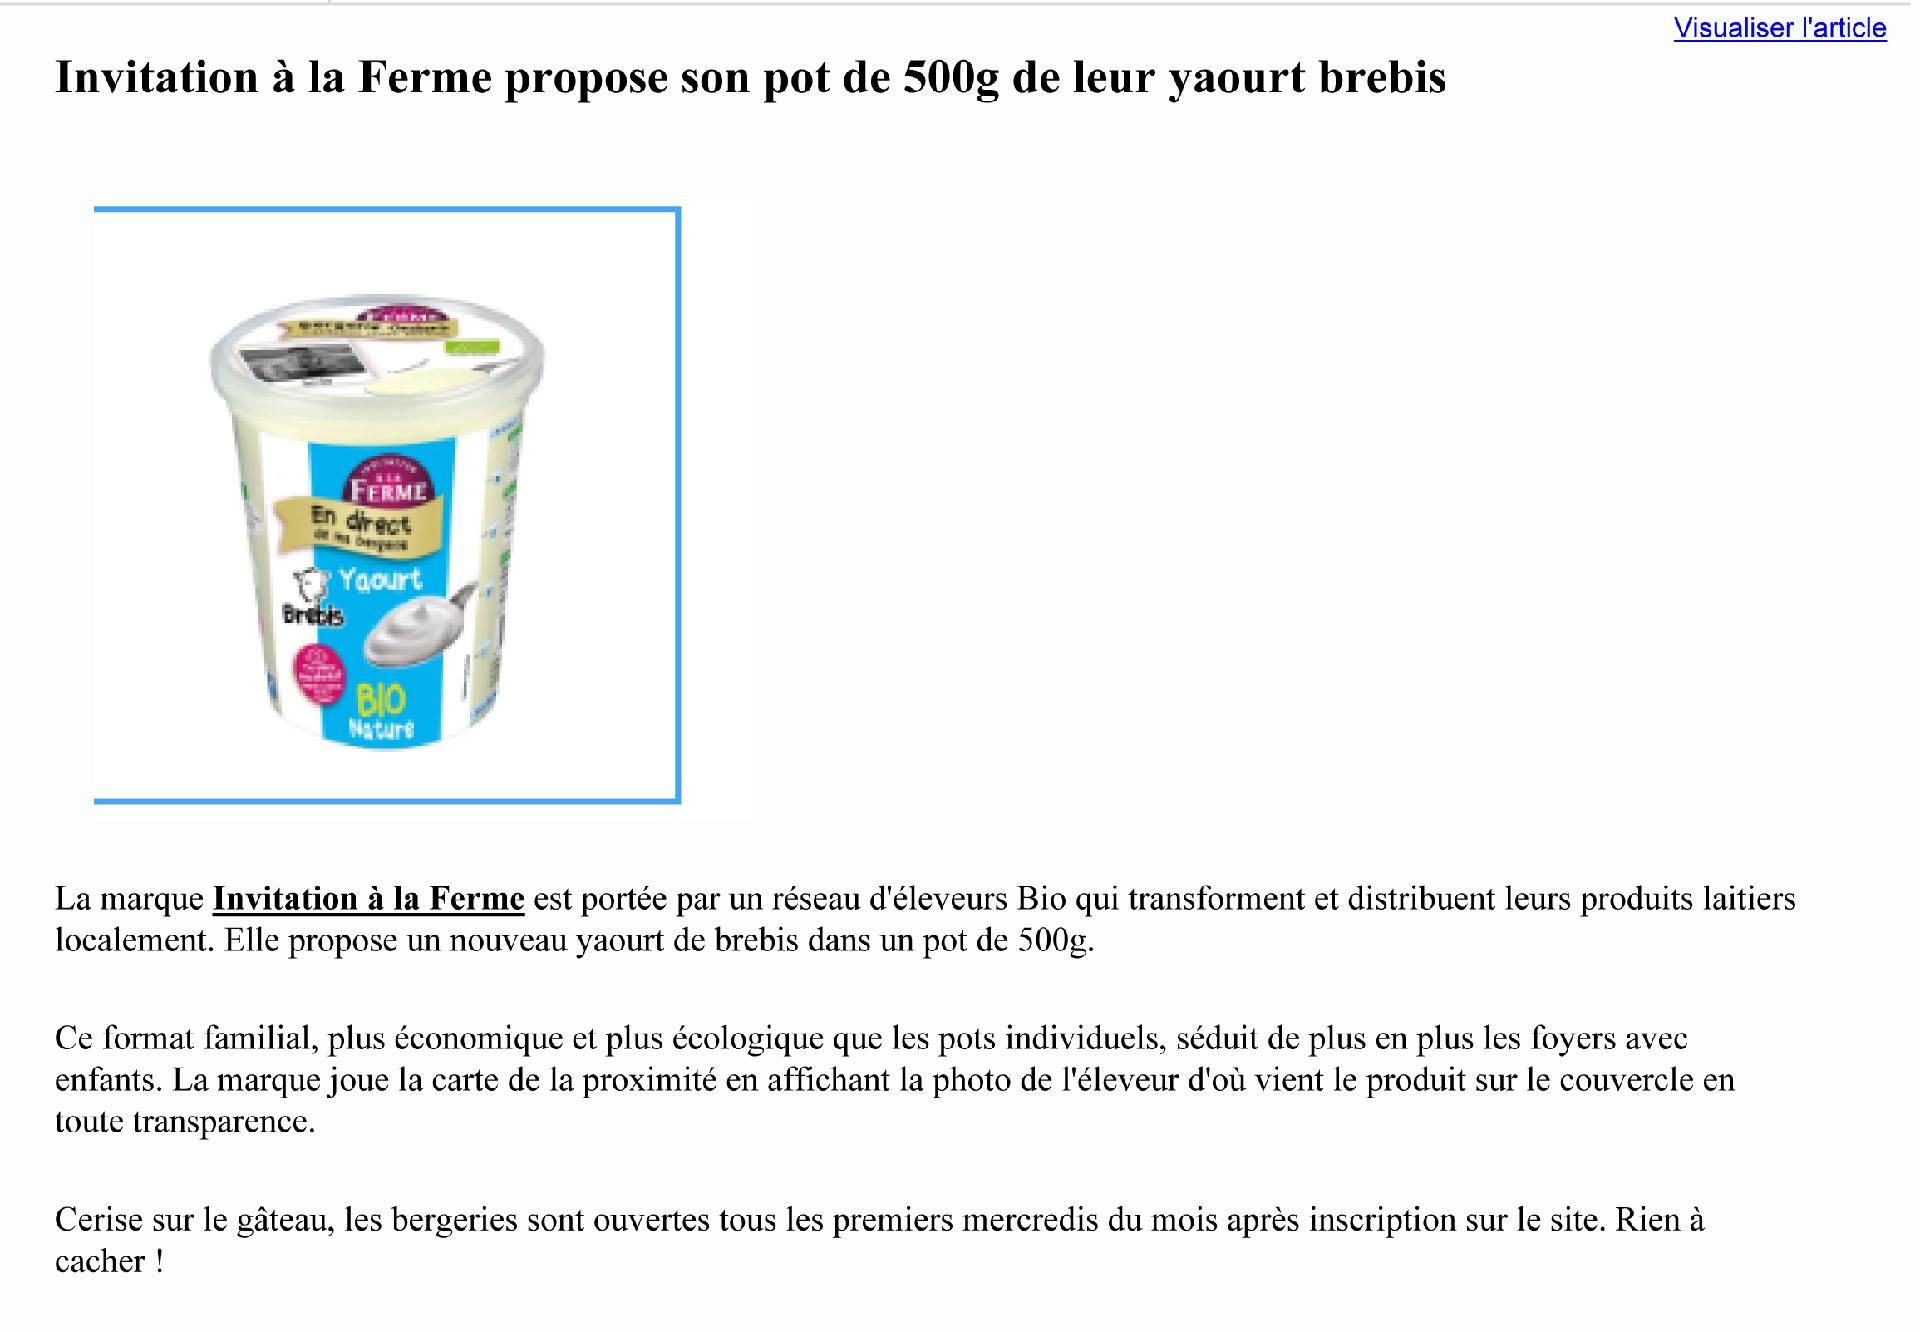 Lancement de notre yaourt 500g brebis invitation à la ferme